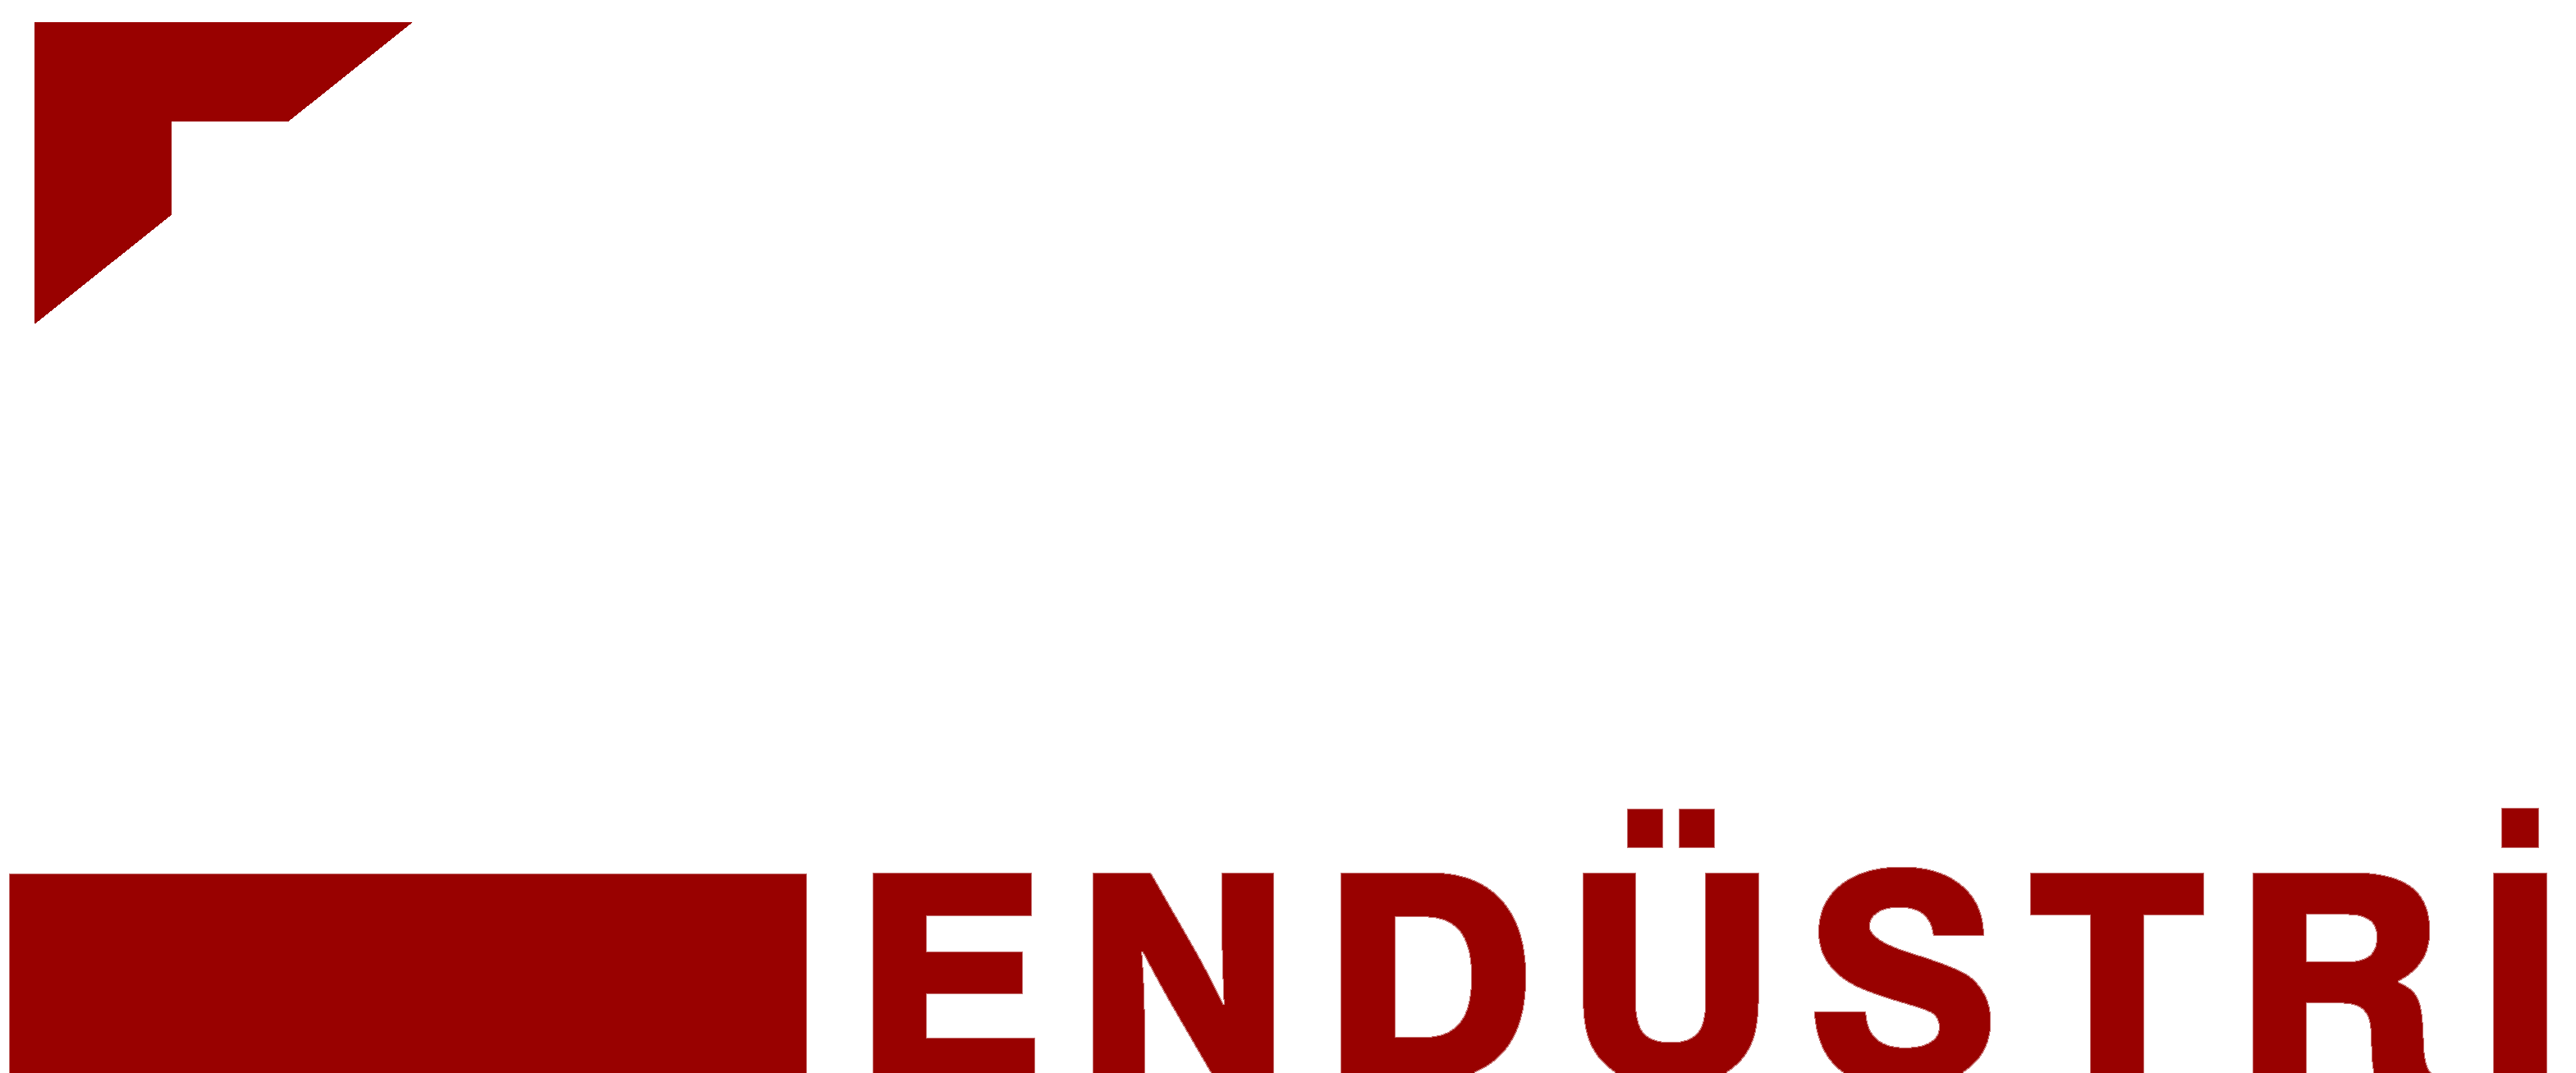 RPM Endüstri